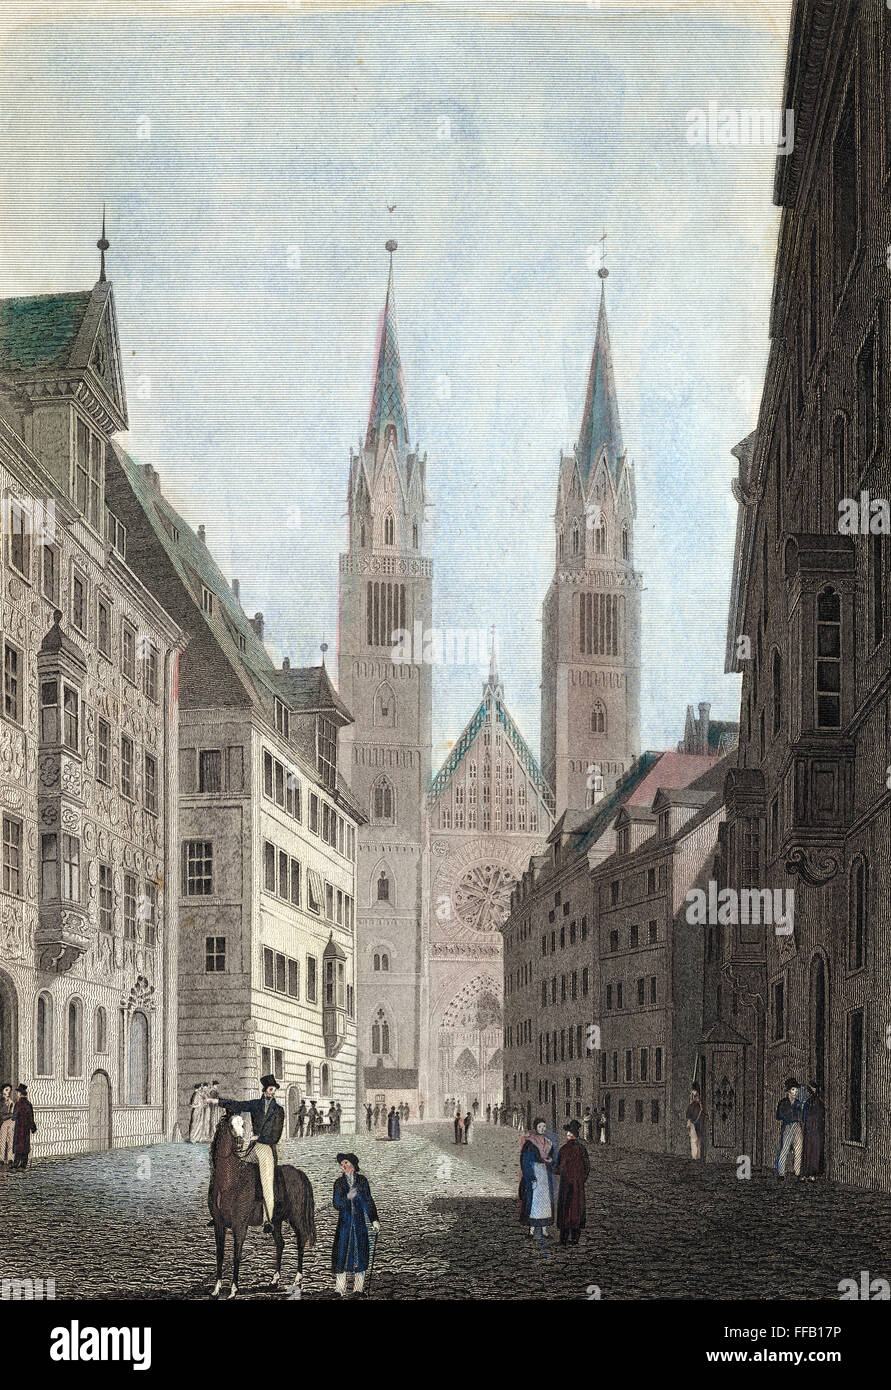 Allemagne : NUREMBERG, 1822. /NSt. Lorenz Kirche et Karolinen Strasse à Nuremberg, Allemagne. Gravure sur acier, 1822, d'après un dessin de Robert Batty. Banque D'Images